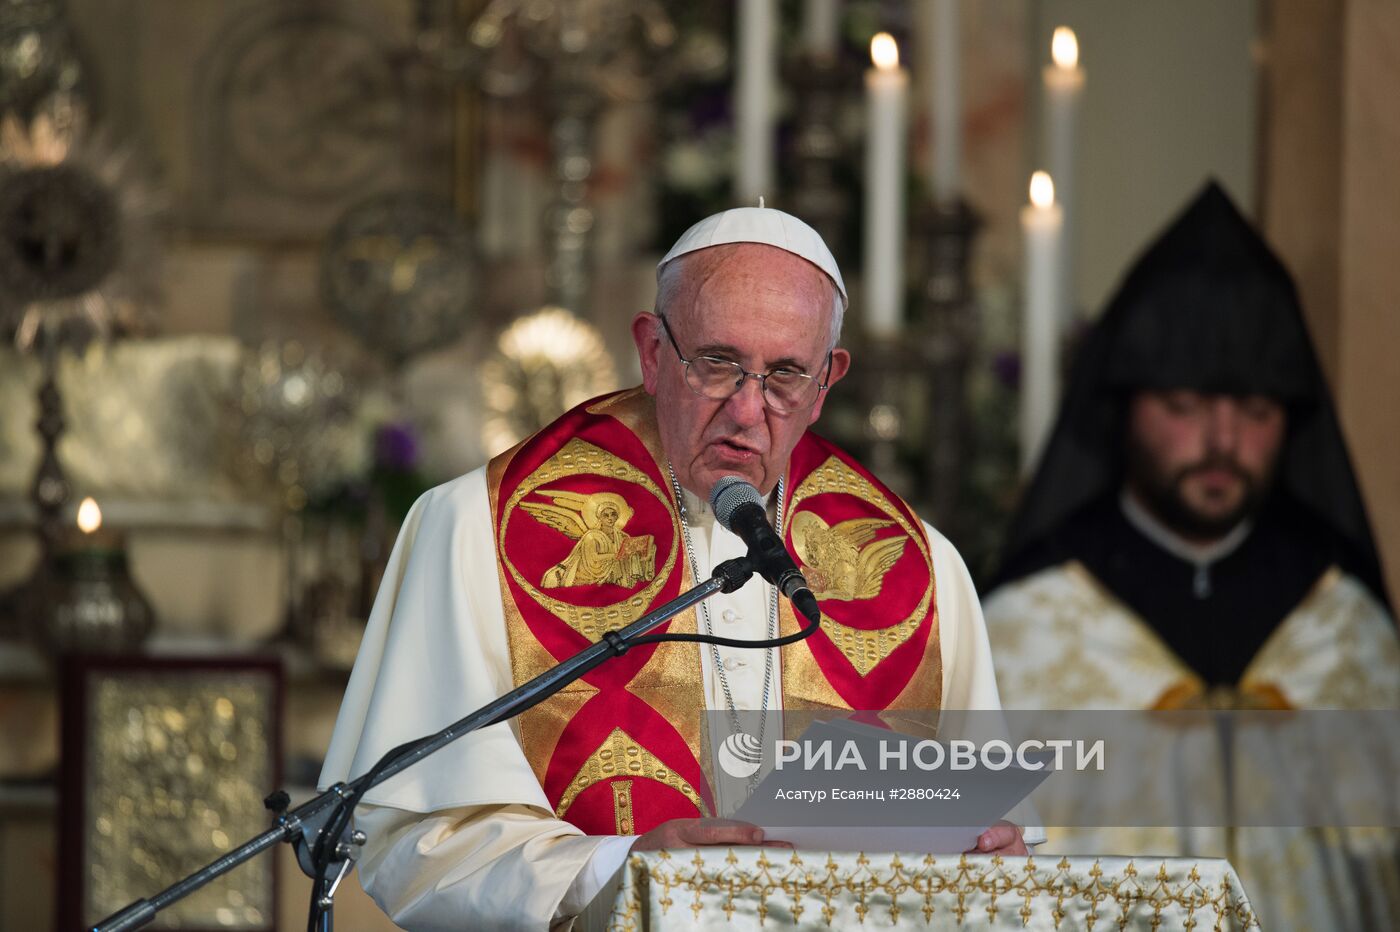 Визит папы римского в Армению